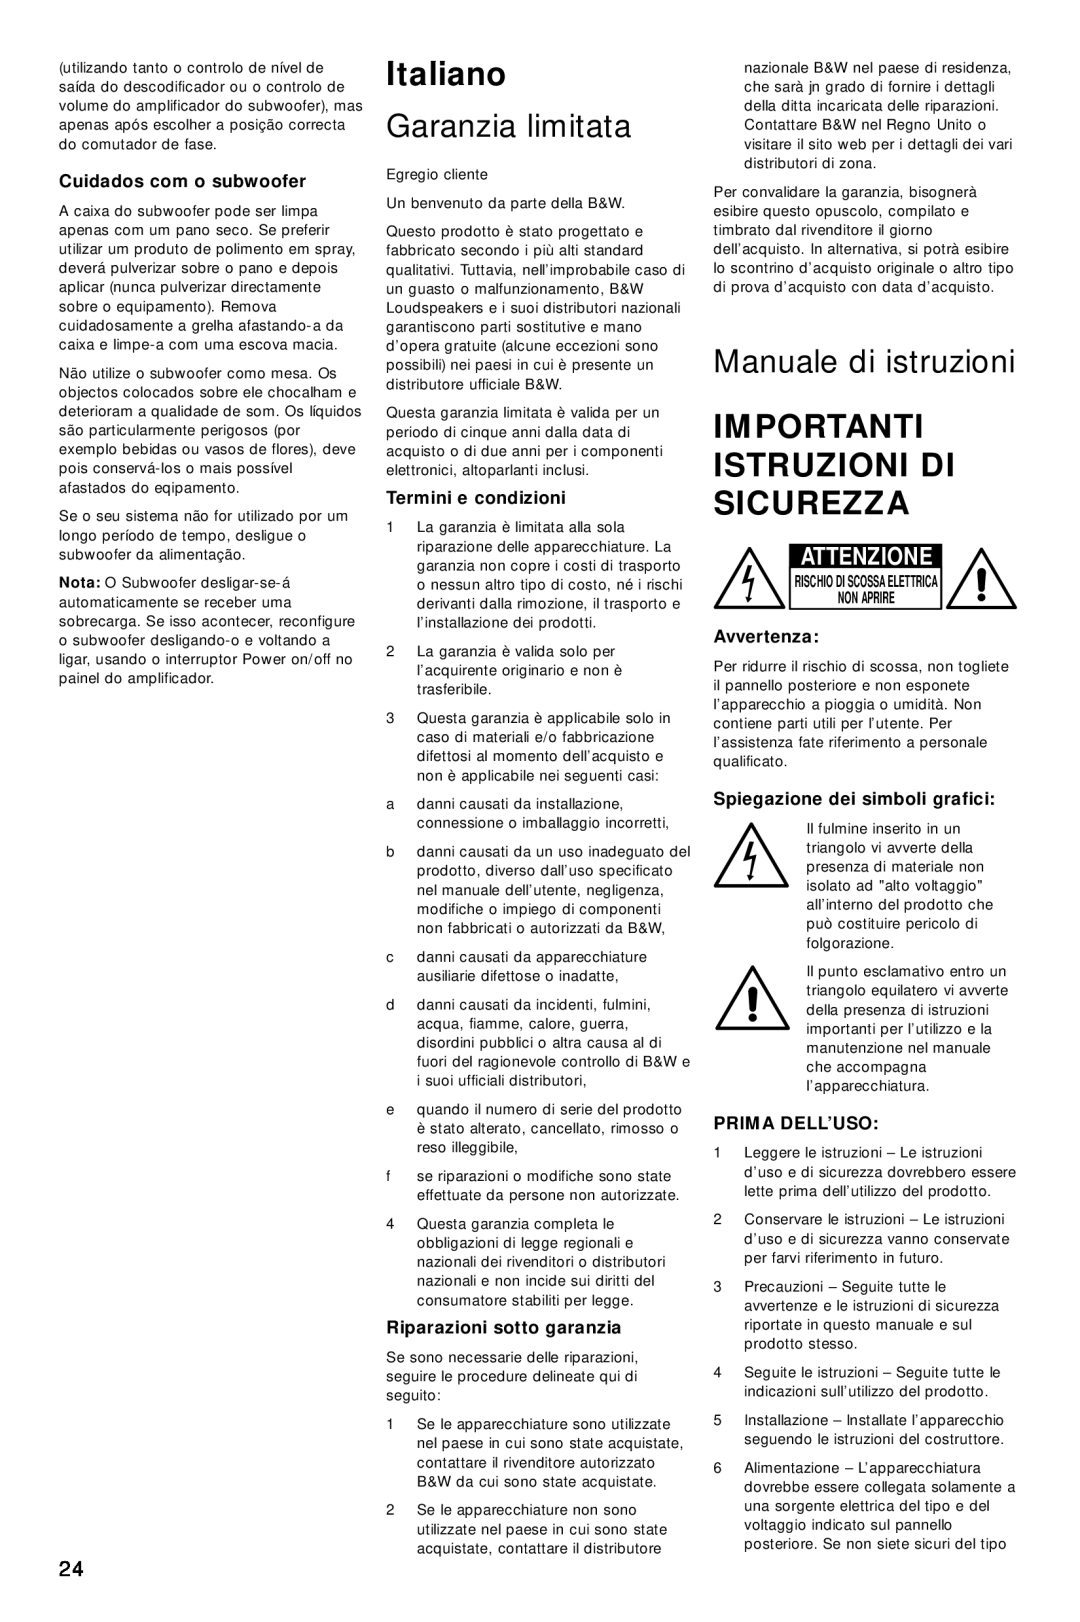 Bowers & Wilkins ASW800 Italiano, Garanzia limitata, Manuale di istruzioni, Importanti Istruzioni Di Sicurezza, Attenzione 